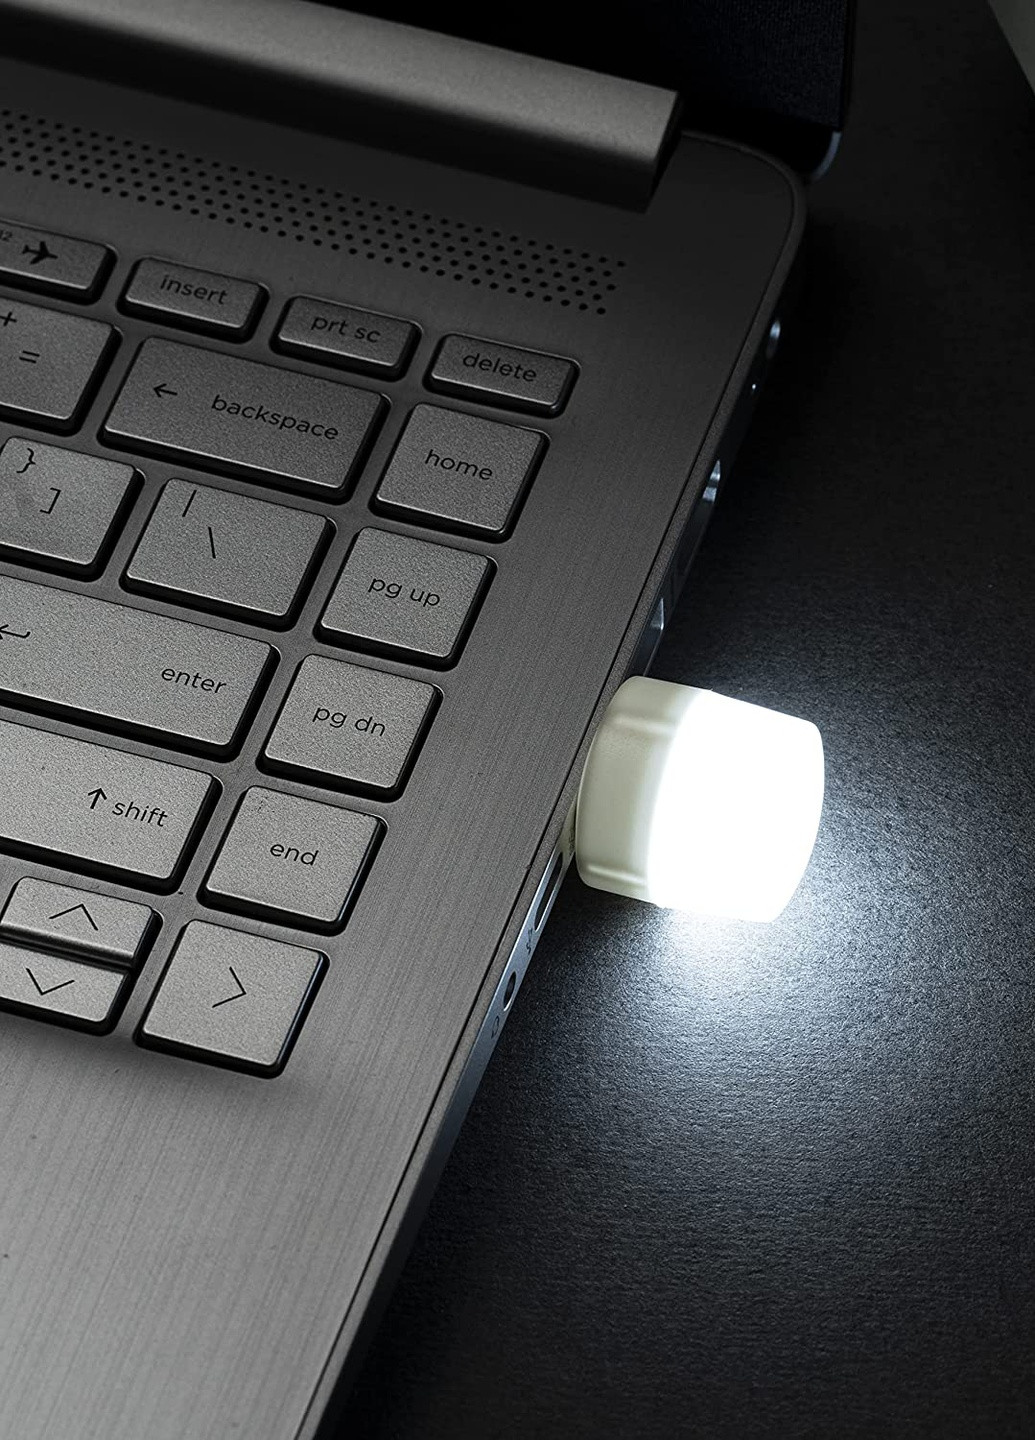 USB LED Лампочка 1W / 5В, Портативна світлодіодна Міні USB лампа для павербанка Martec (256900205)